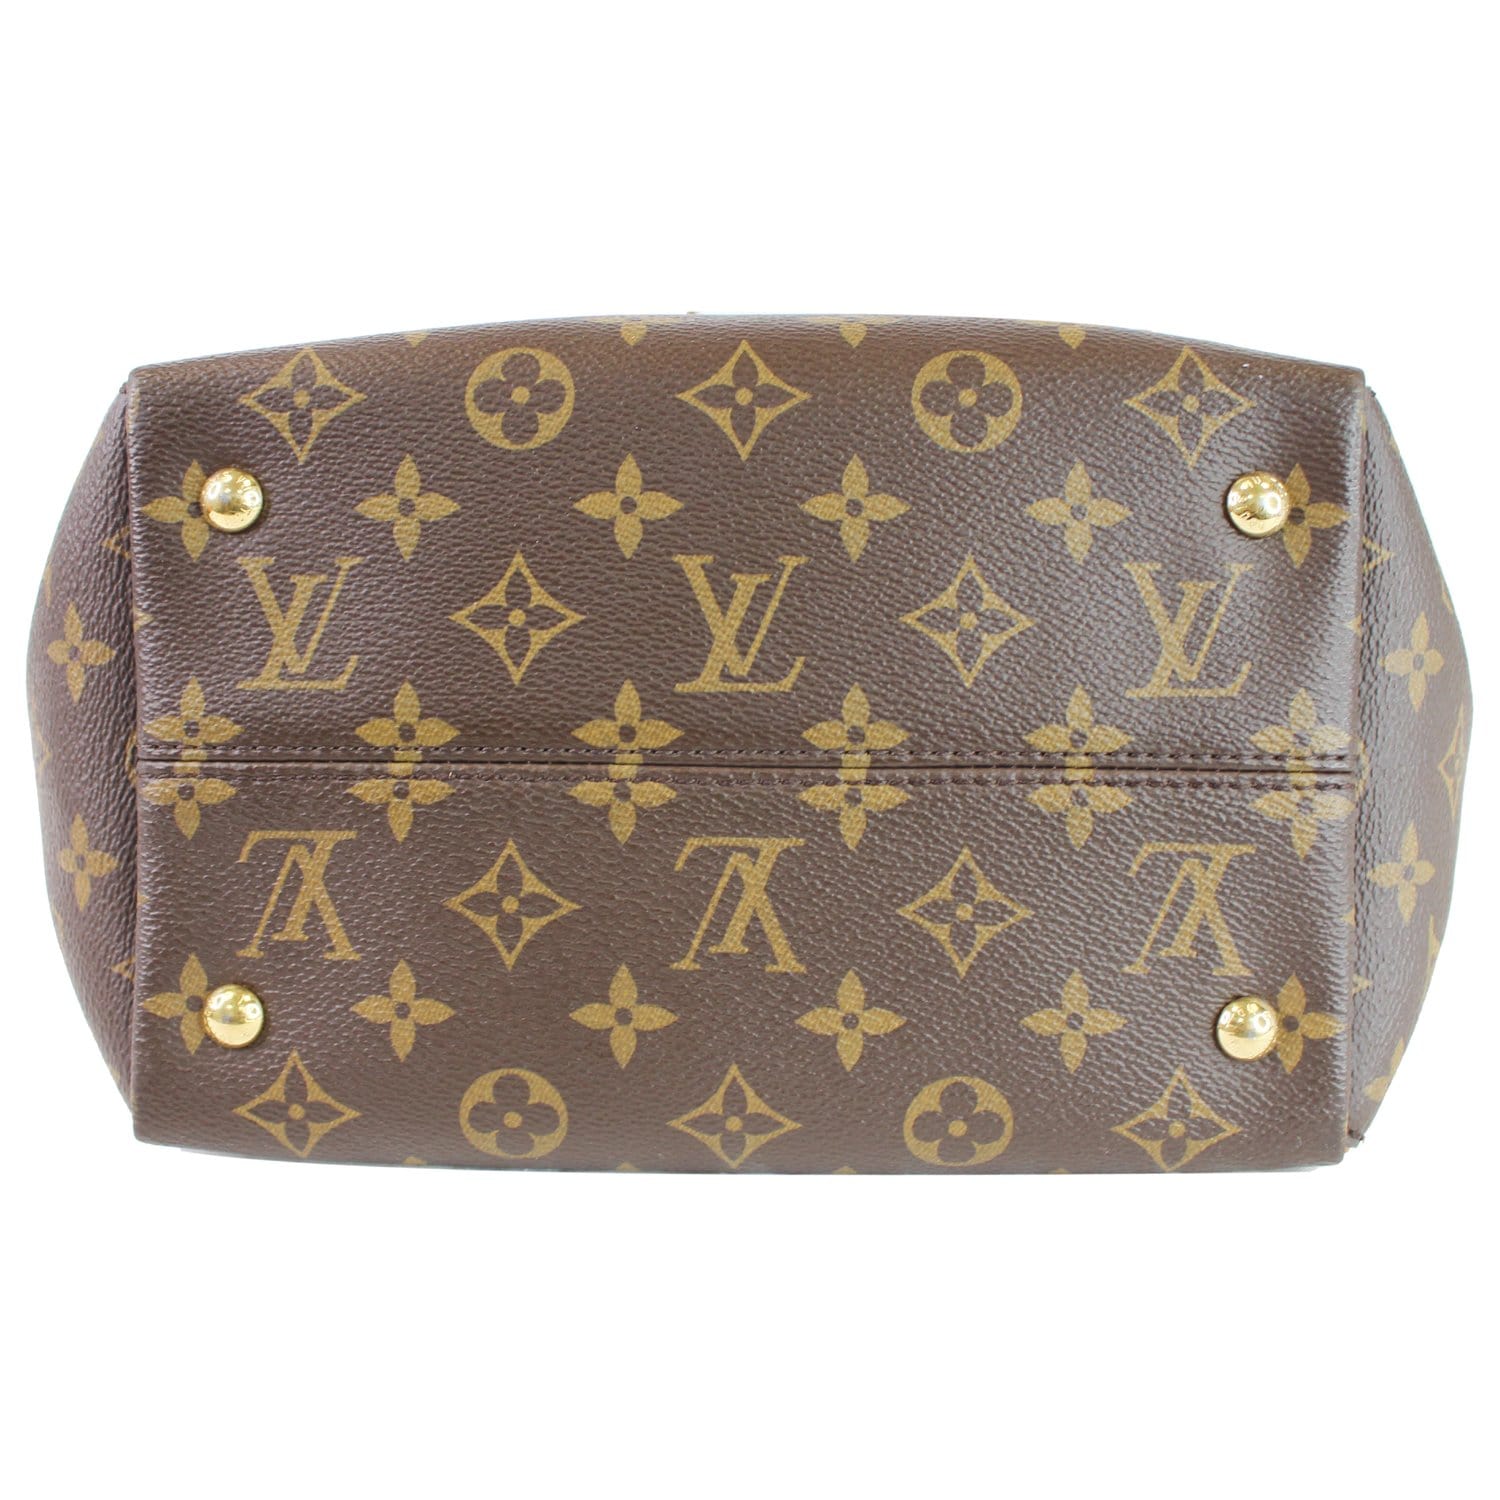 Louis Vuitton Handtasche, M44027 Monogram Tournelle PM braun/rot